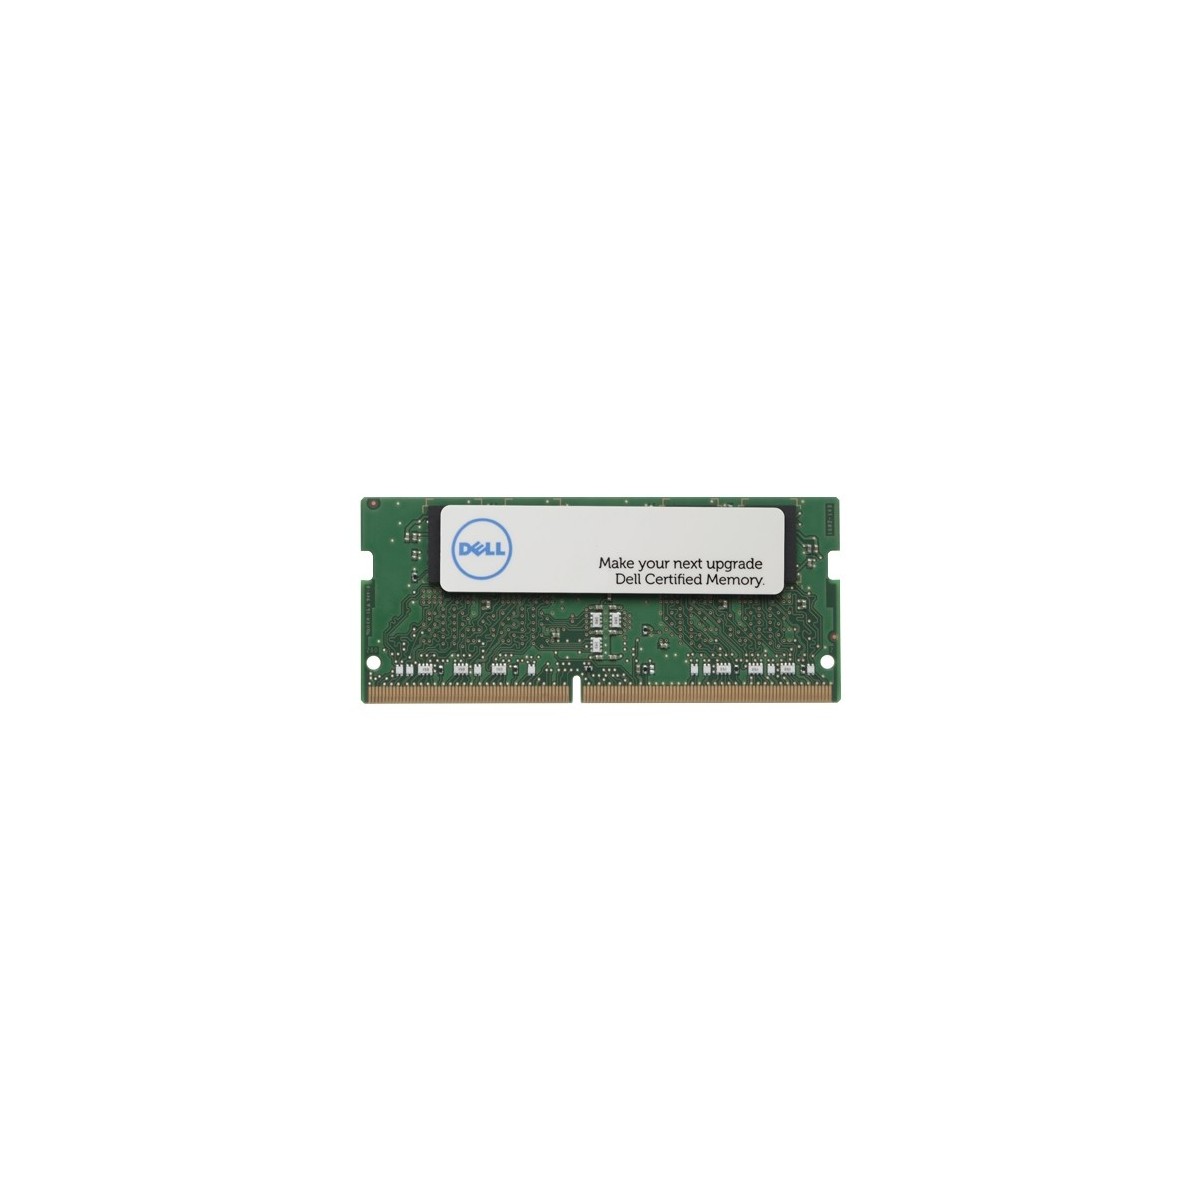 Dell A9210967 - 8 GB - 1 x 8 GB - DDR4 - 2400 MHz - 260-pin SO-DIMM - Green